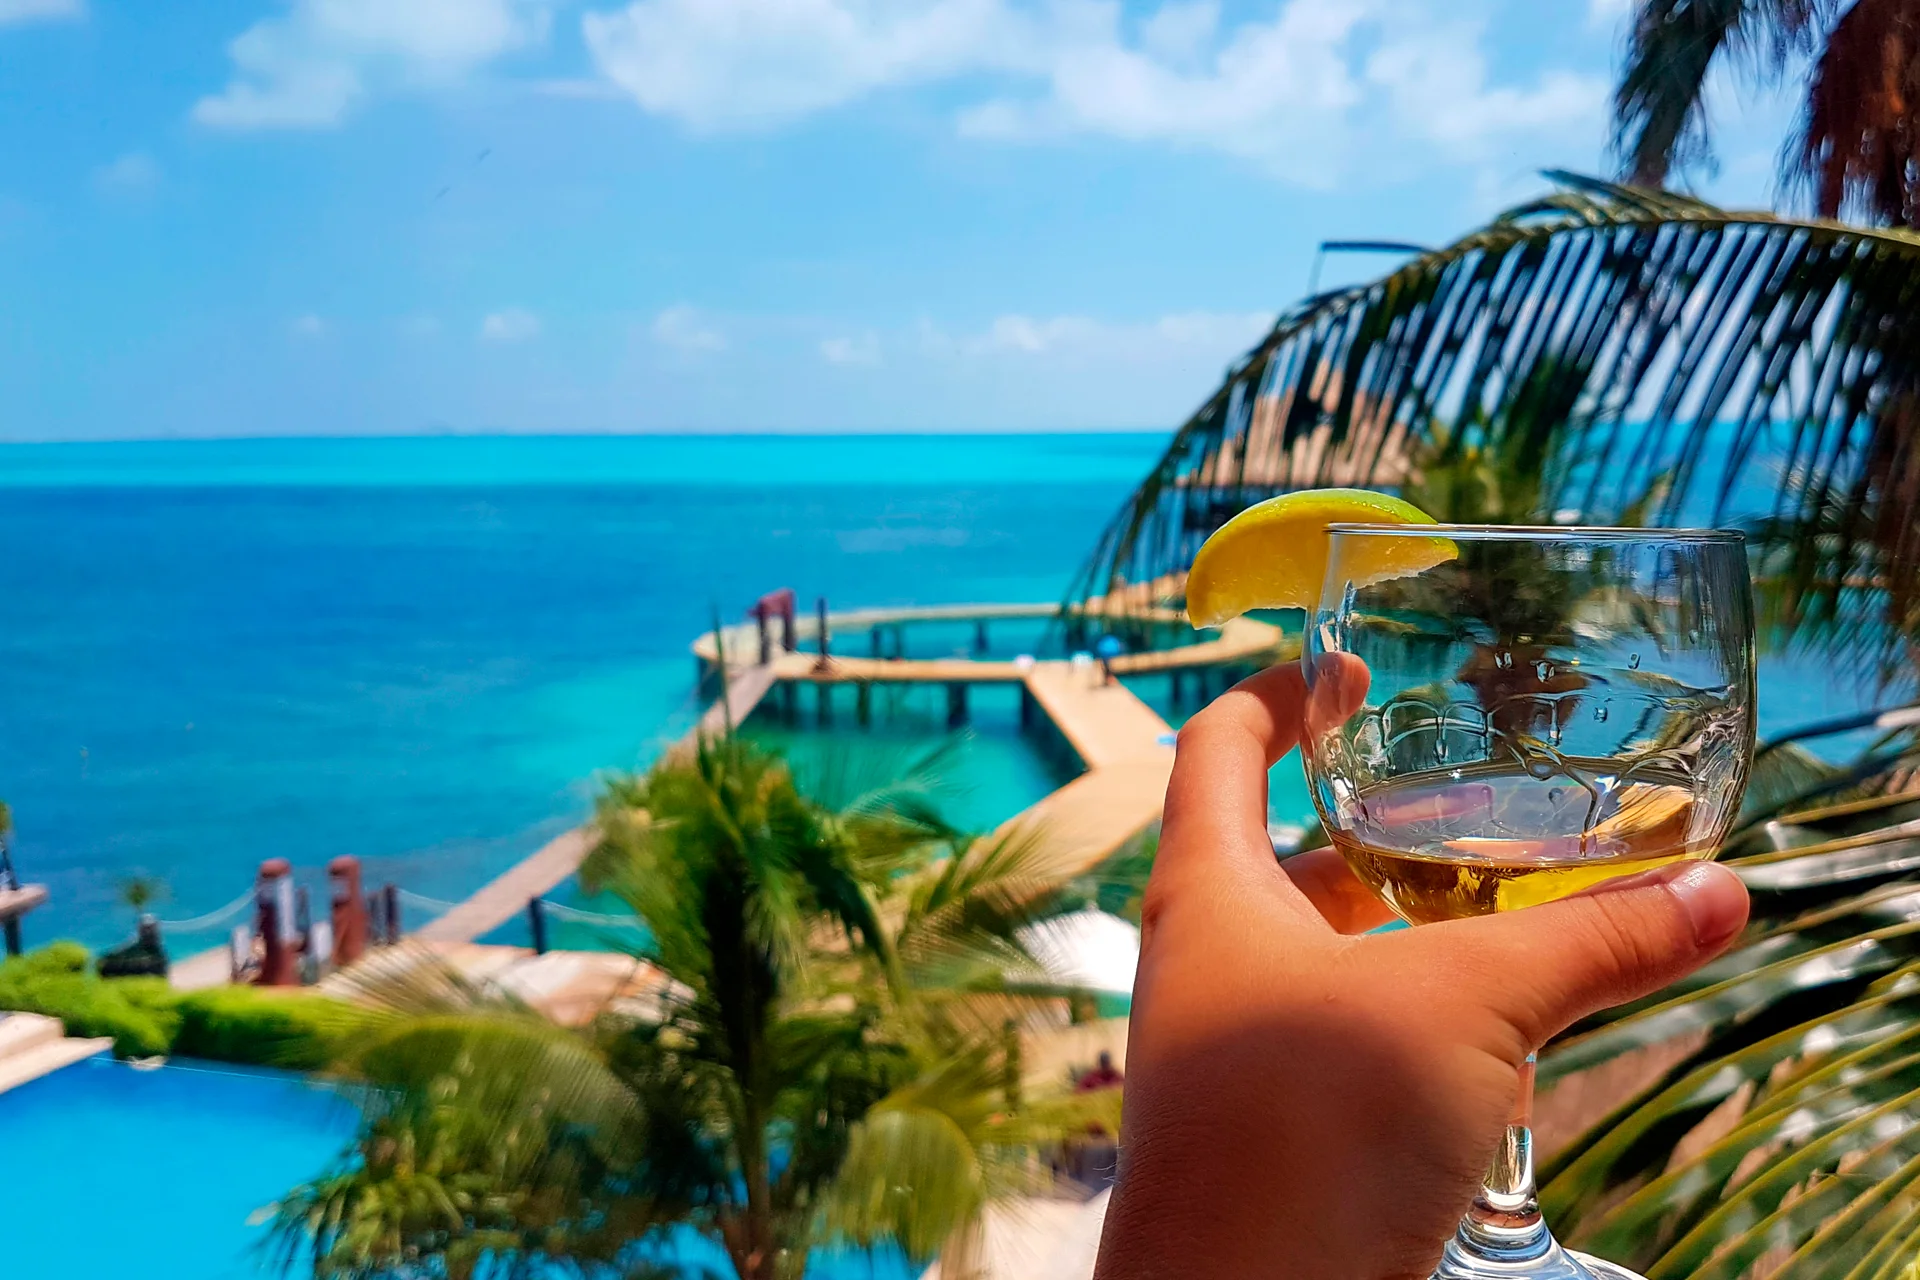 Ospite ai Caraibi che si gode le vacanze al mare